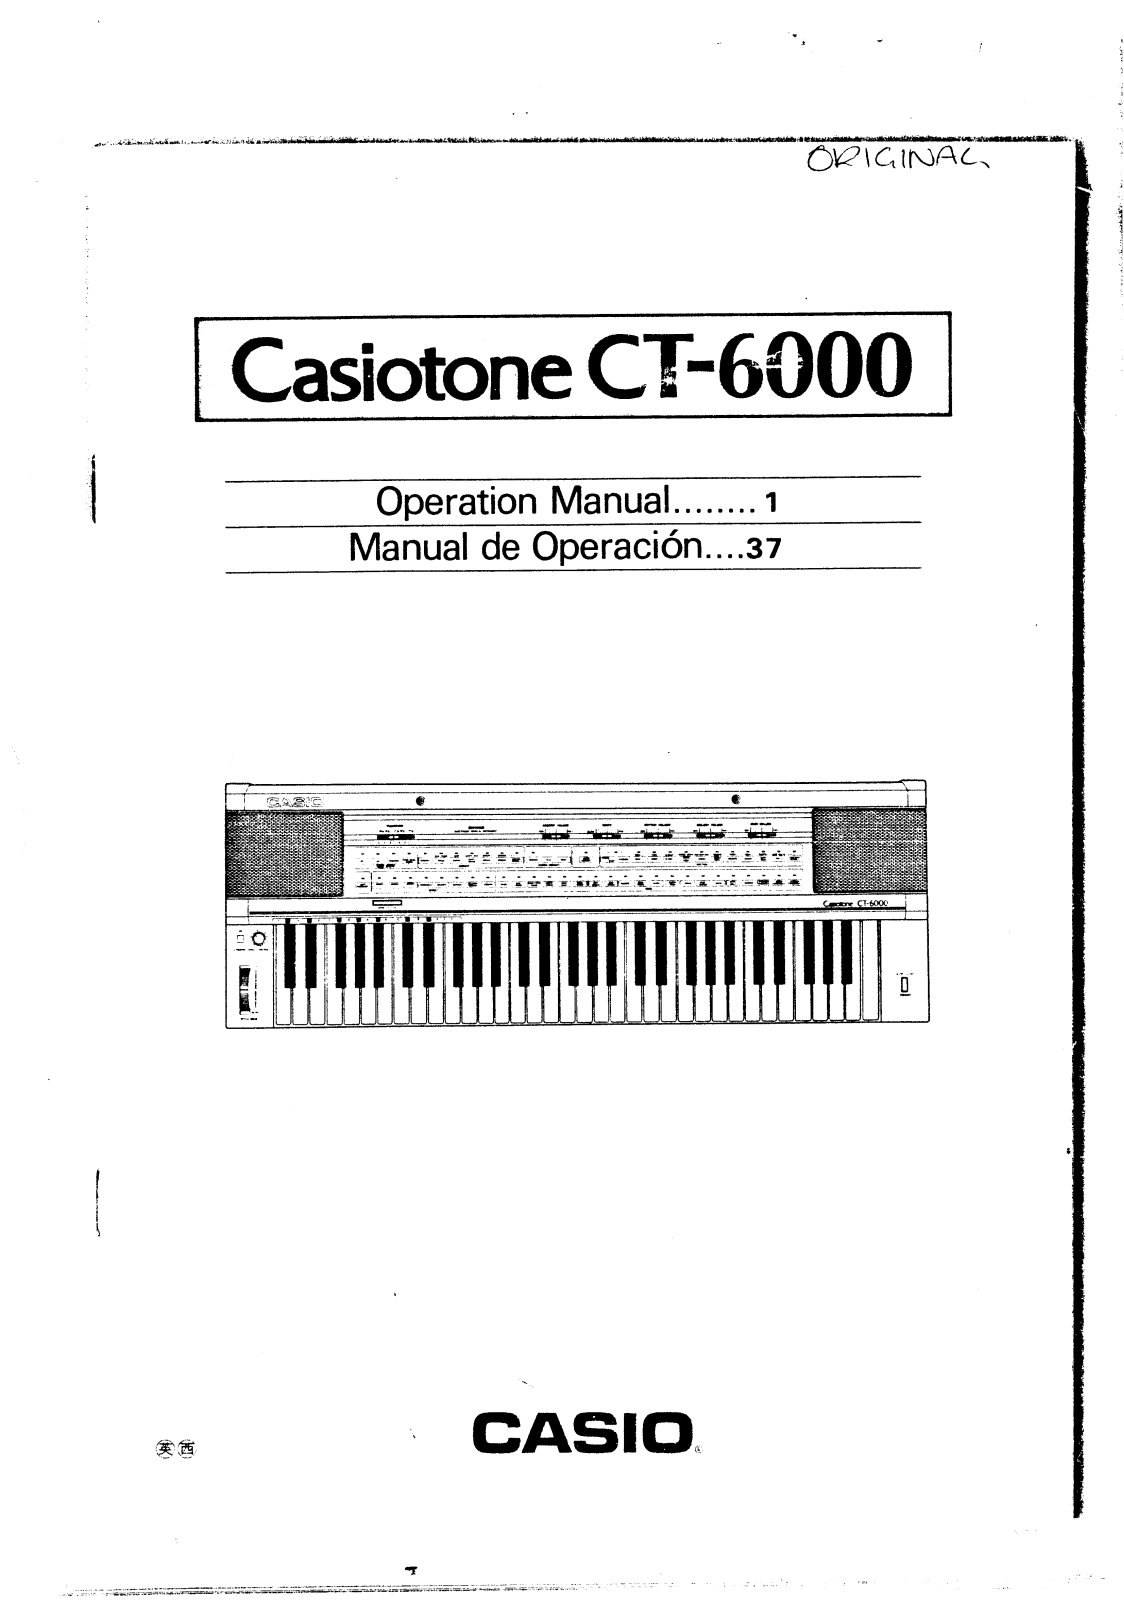 Casio CT-6000 User Manual